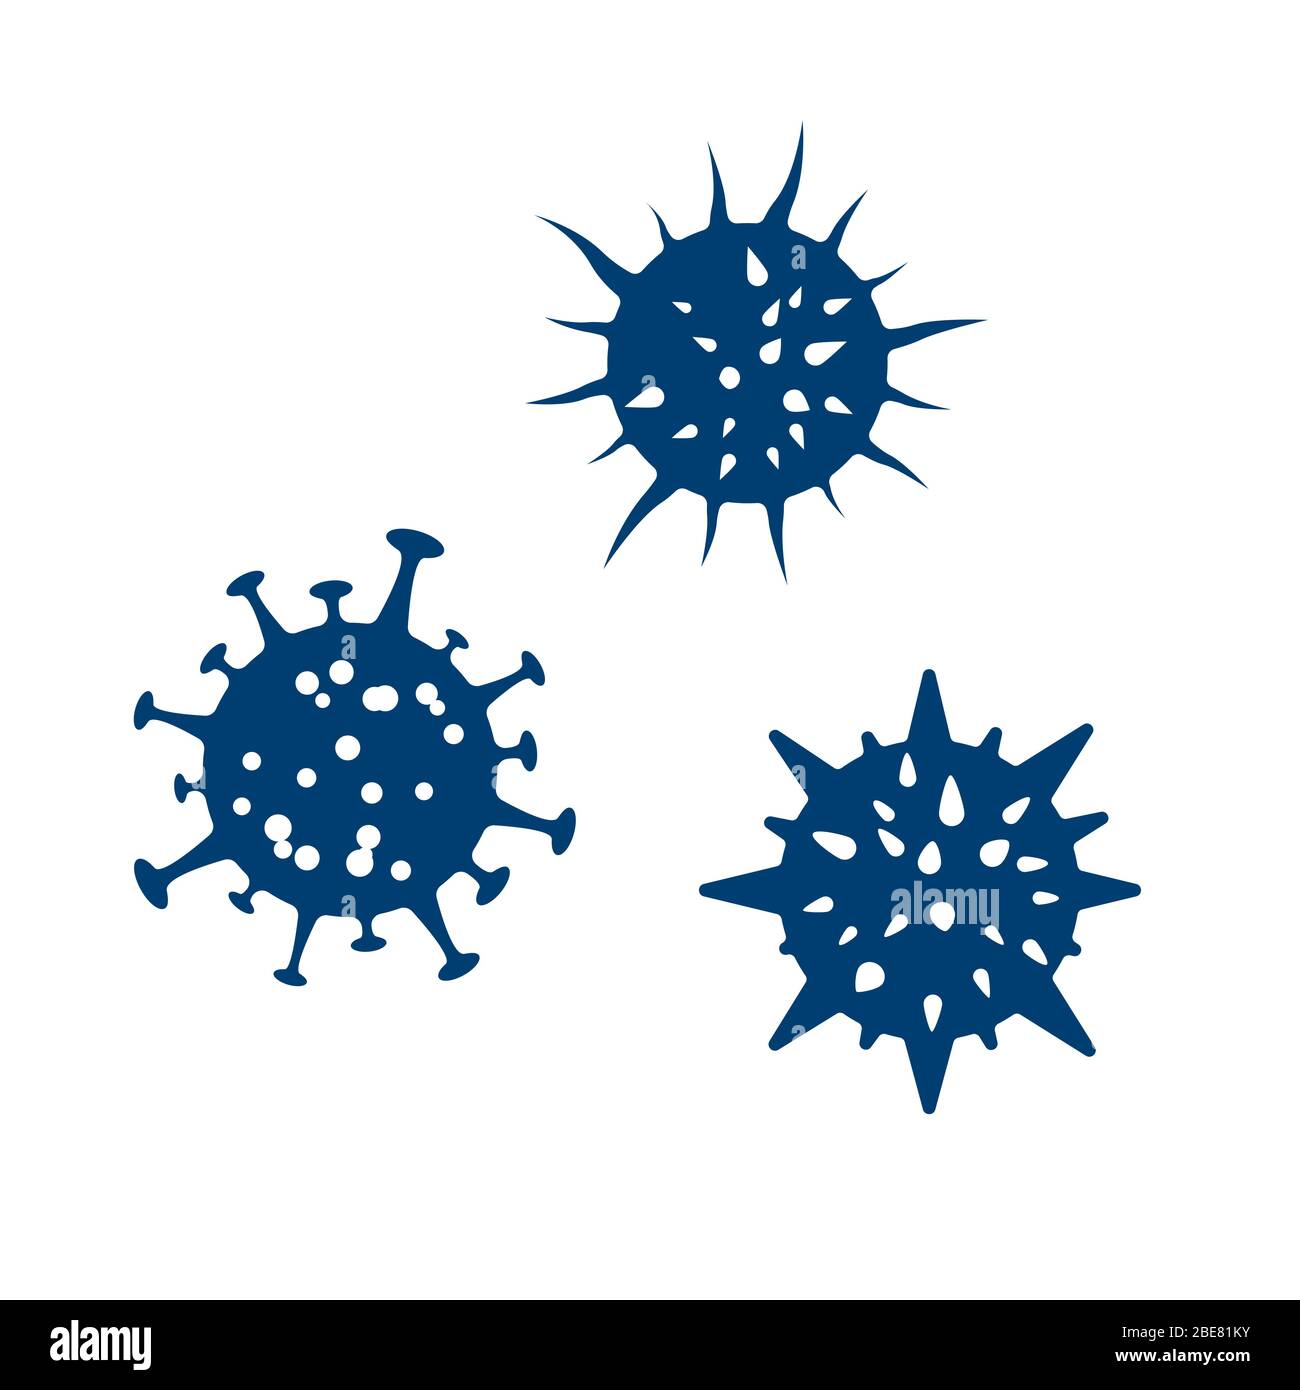 Symbol Corona Virus-Infektion. Grippeinfektion. Medizin Warnung Pandemie Epidemie und Quarantäne. Gefährliche Krankheit. Vektorgrafik Stock Vektor